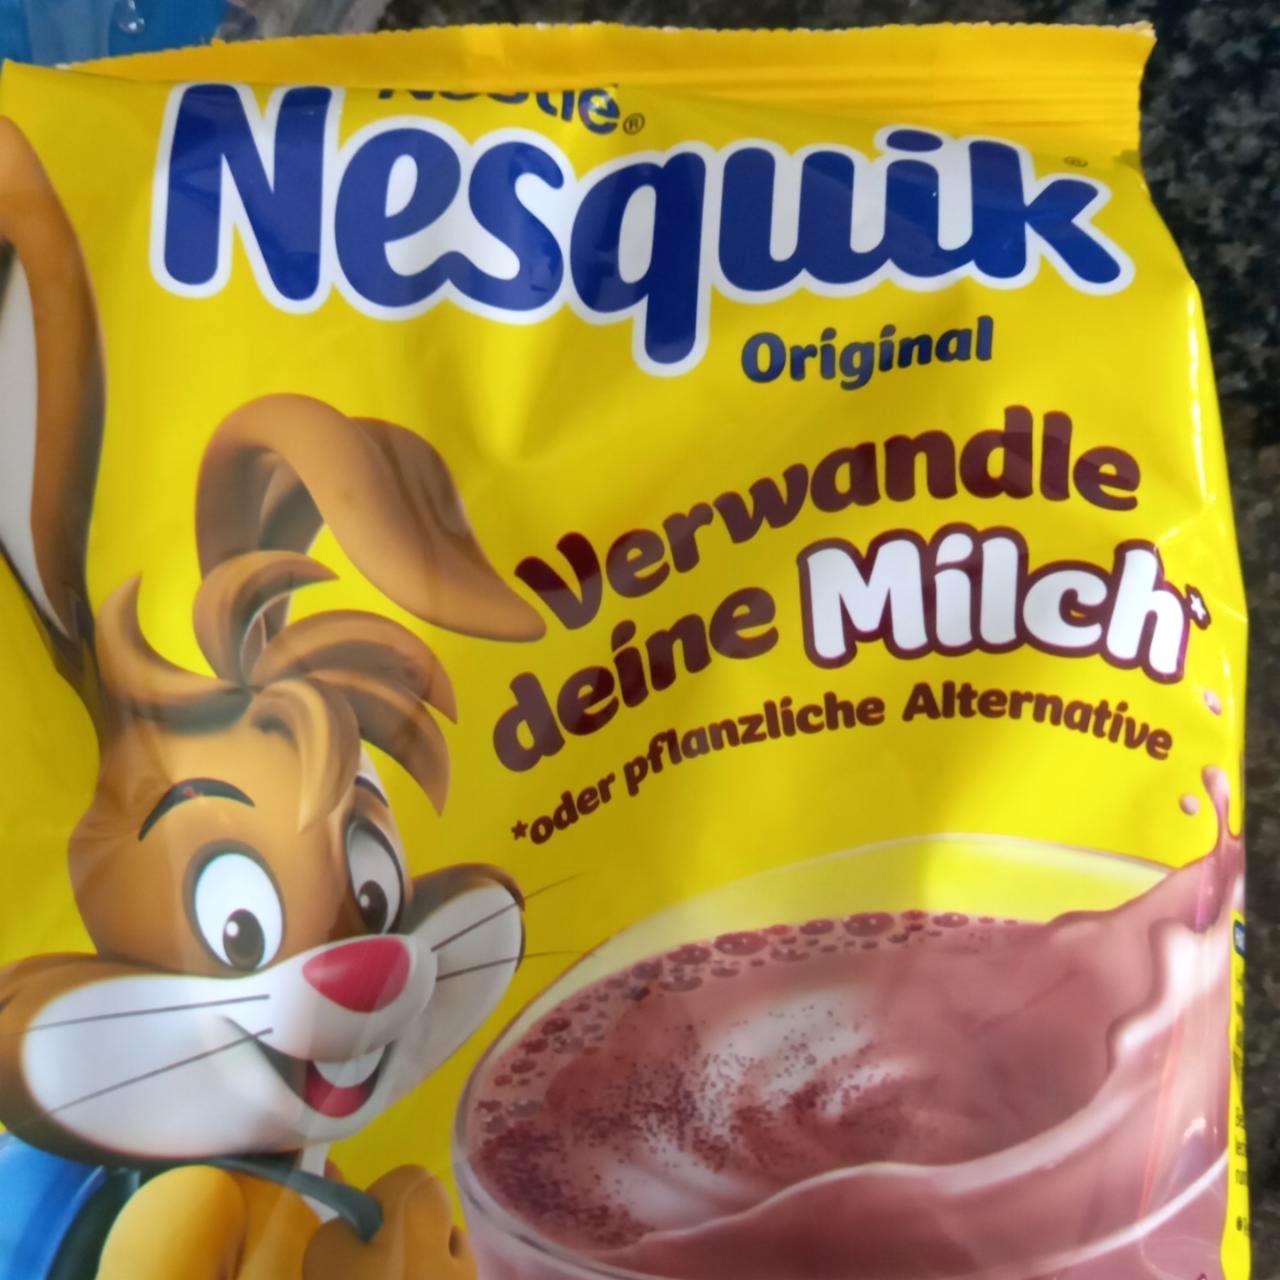 Képek - Nesquik Original Nestlé